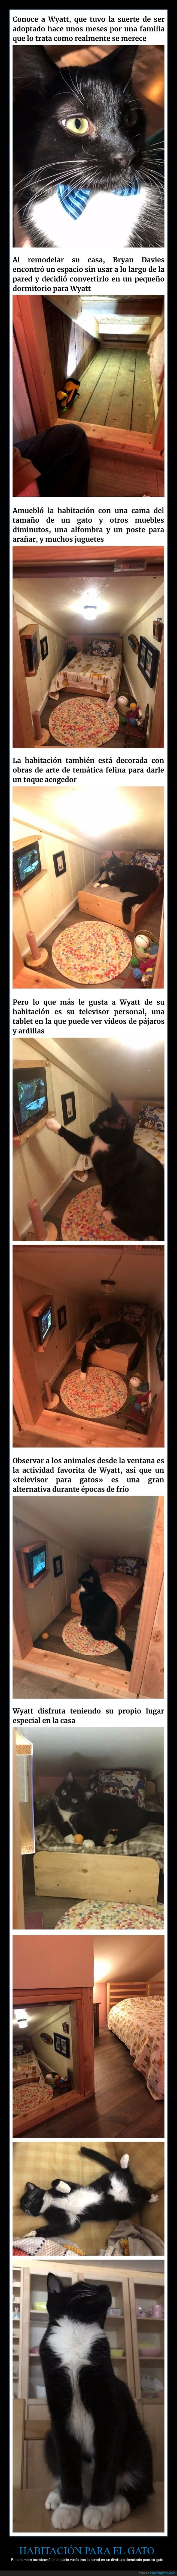 habitación,gato,televisión